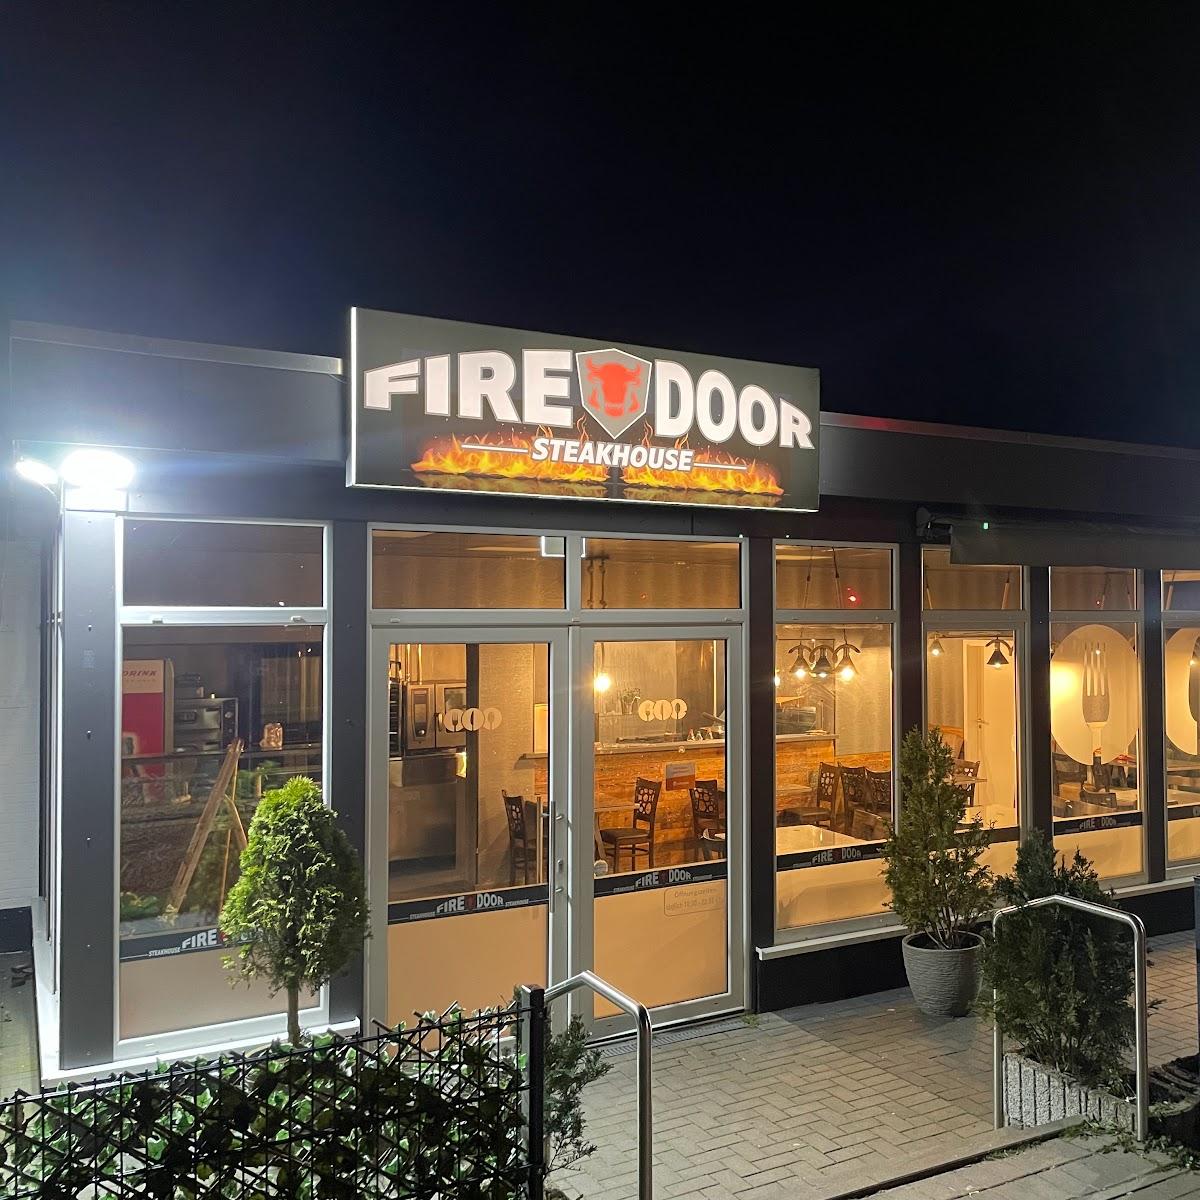 Restaurant "FireDoor" in Rendsburg